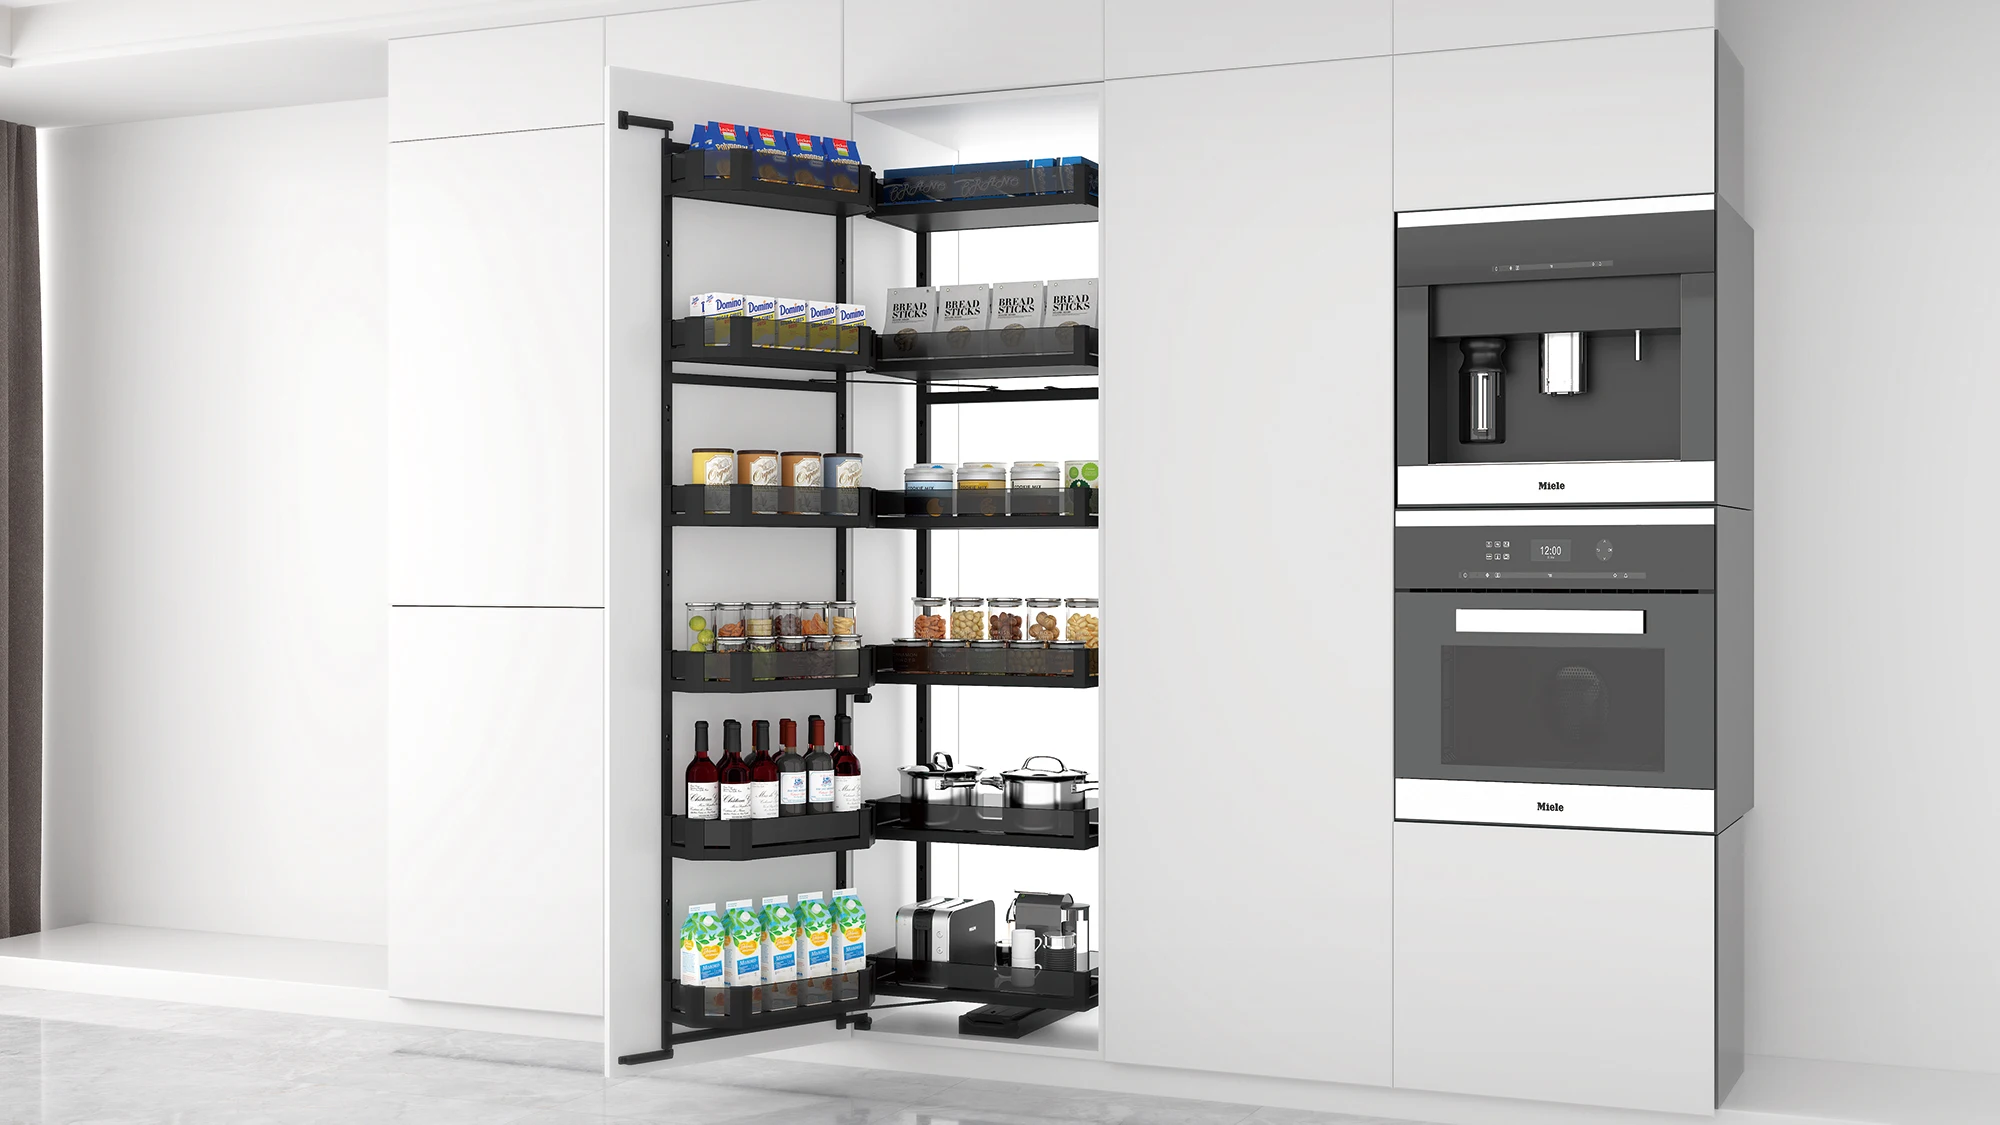 راهنمای خرید تجهیزات کابینت آشپزخانه و سبد سوپرمارکتی